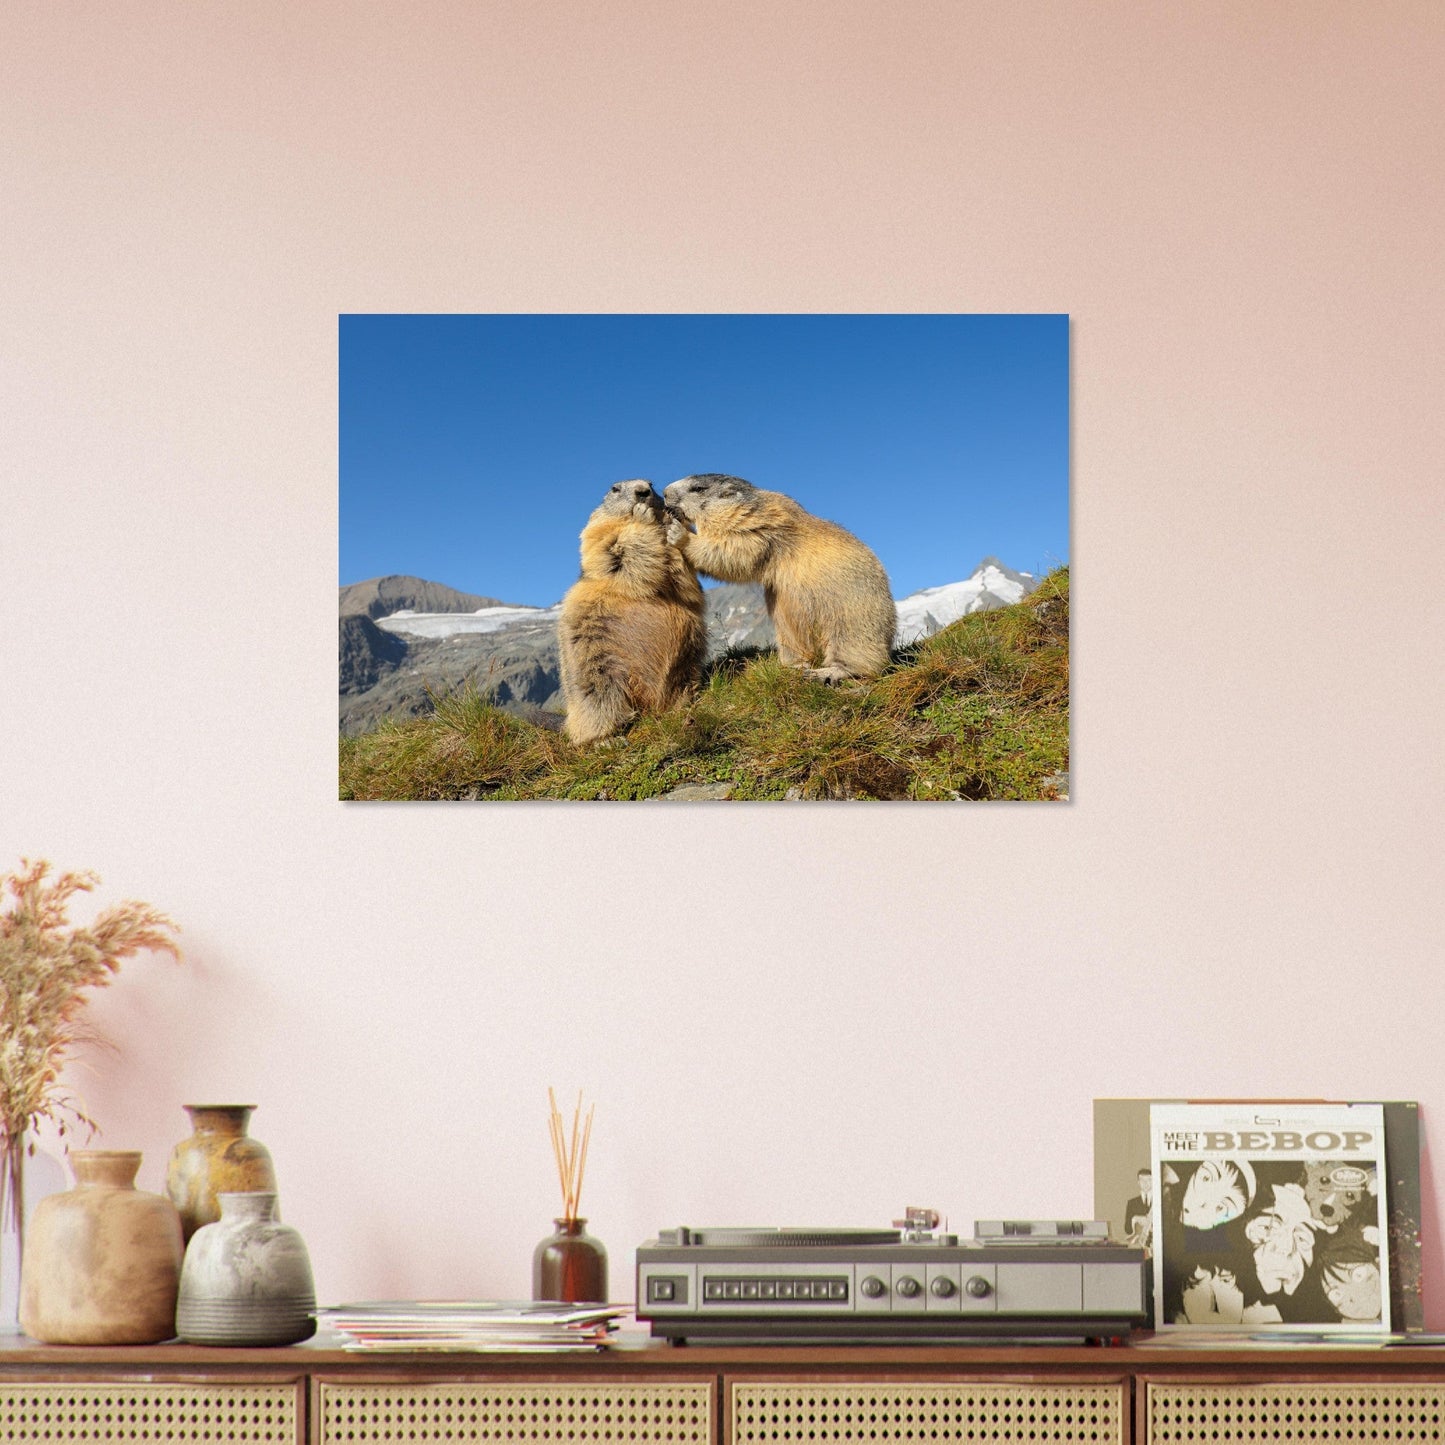 Vente Photo d'une marmotte dans les Alpes #11 - Tableau photo paysage